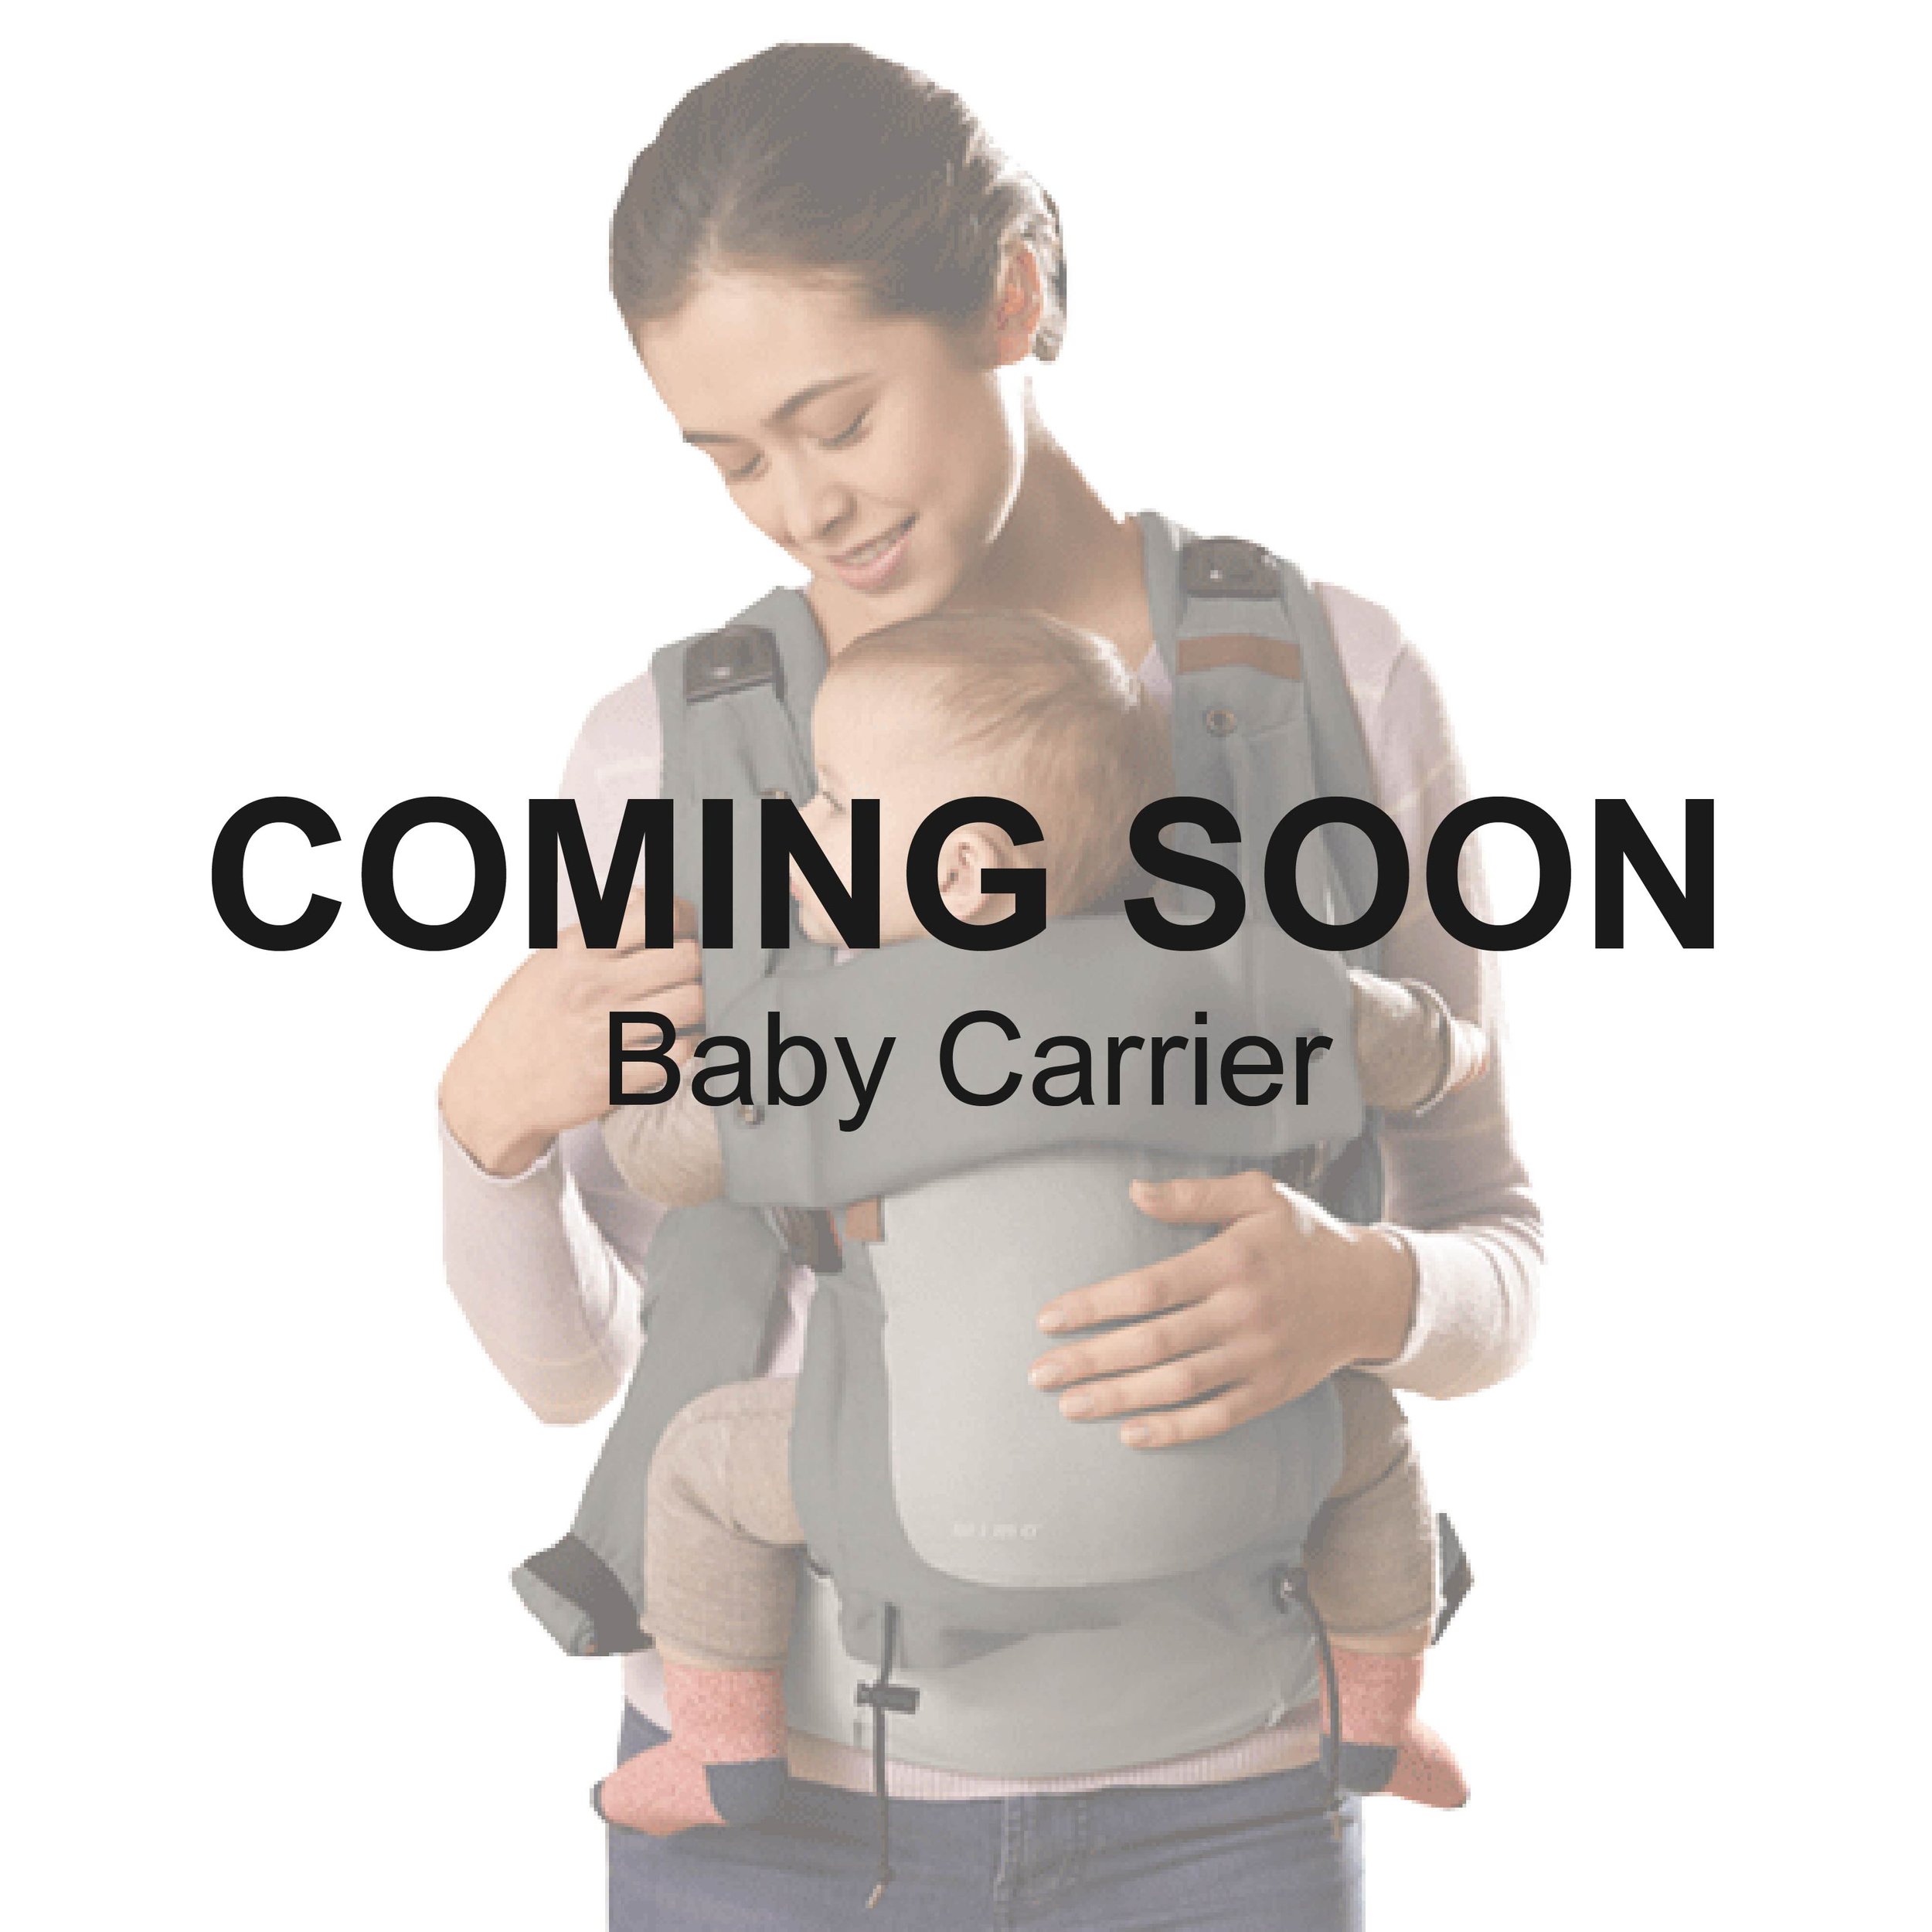 Website_Coming-Soon_Baby Carrier.jpg